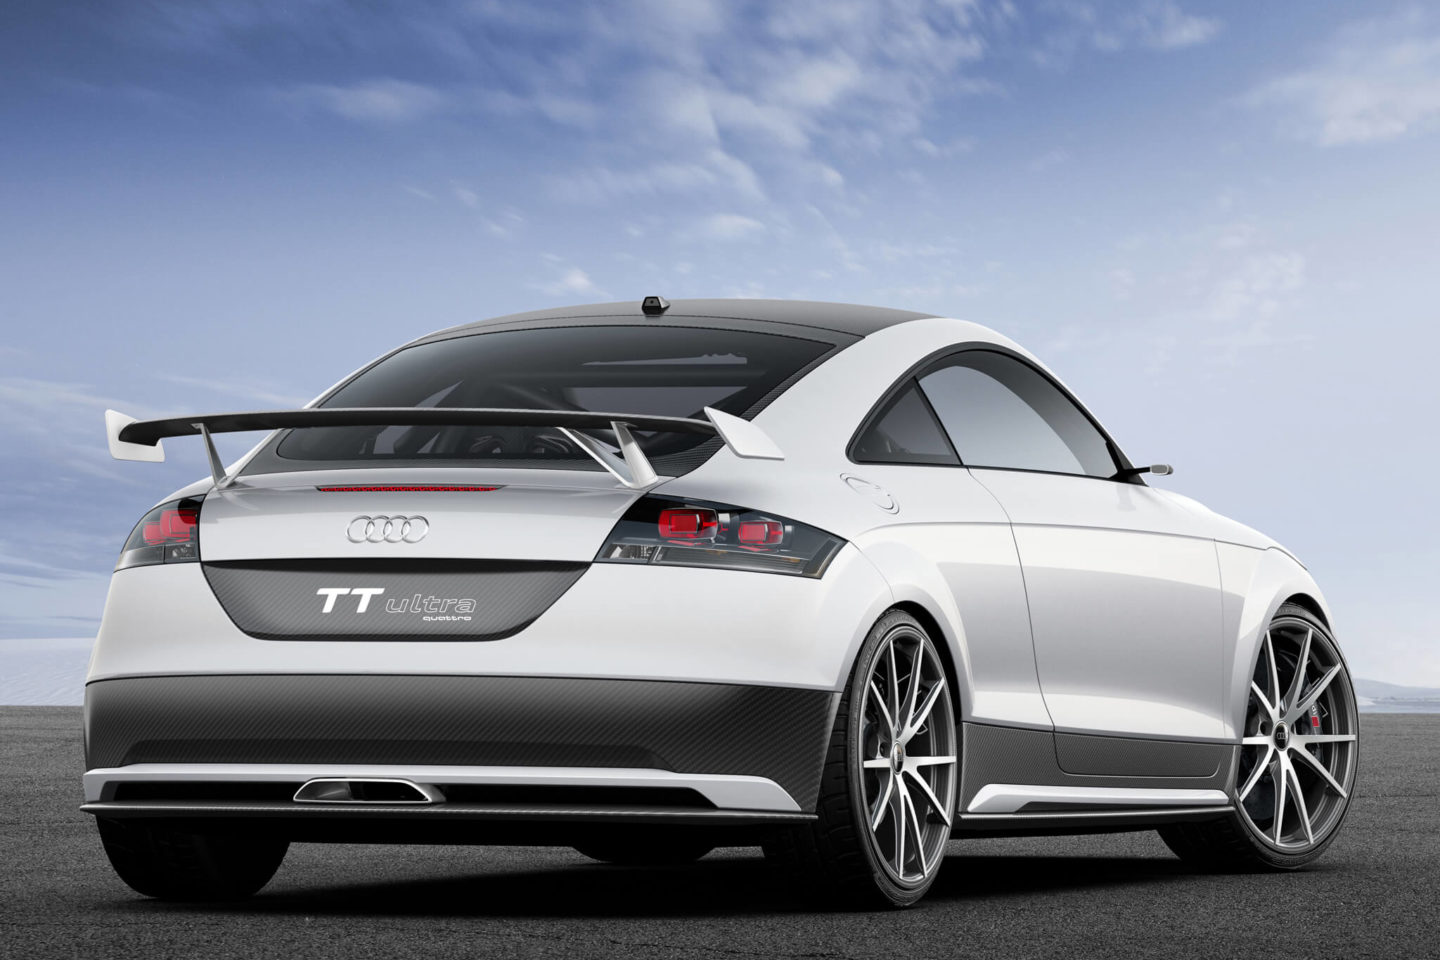 Audi TT Ultra Quattro concept